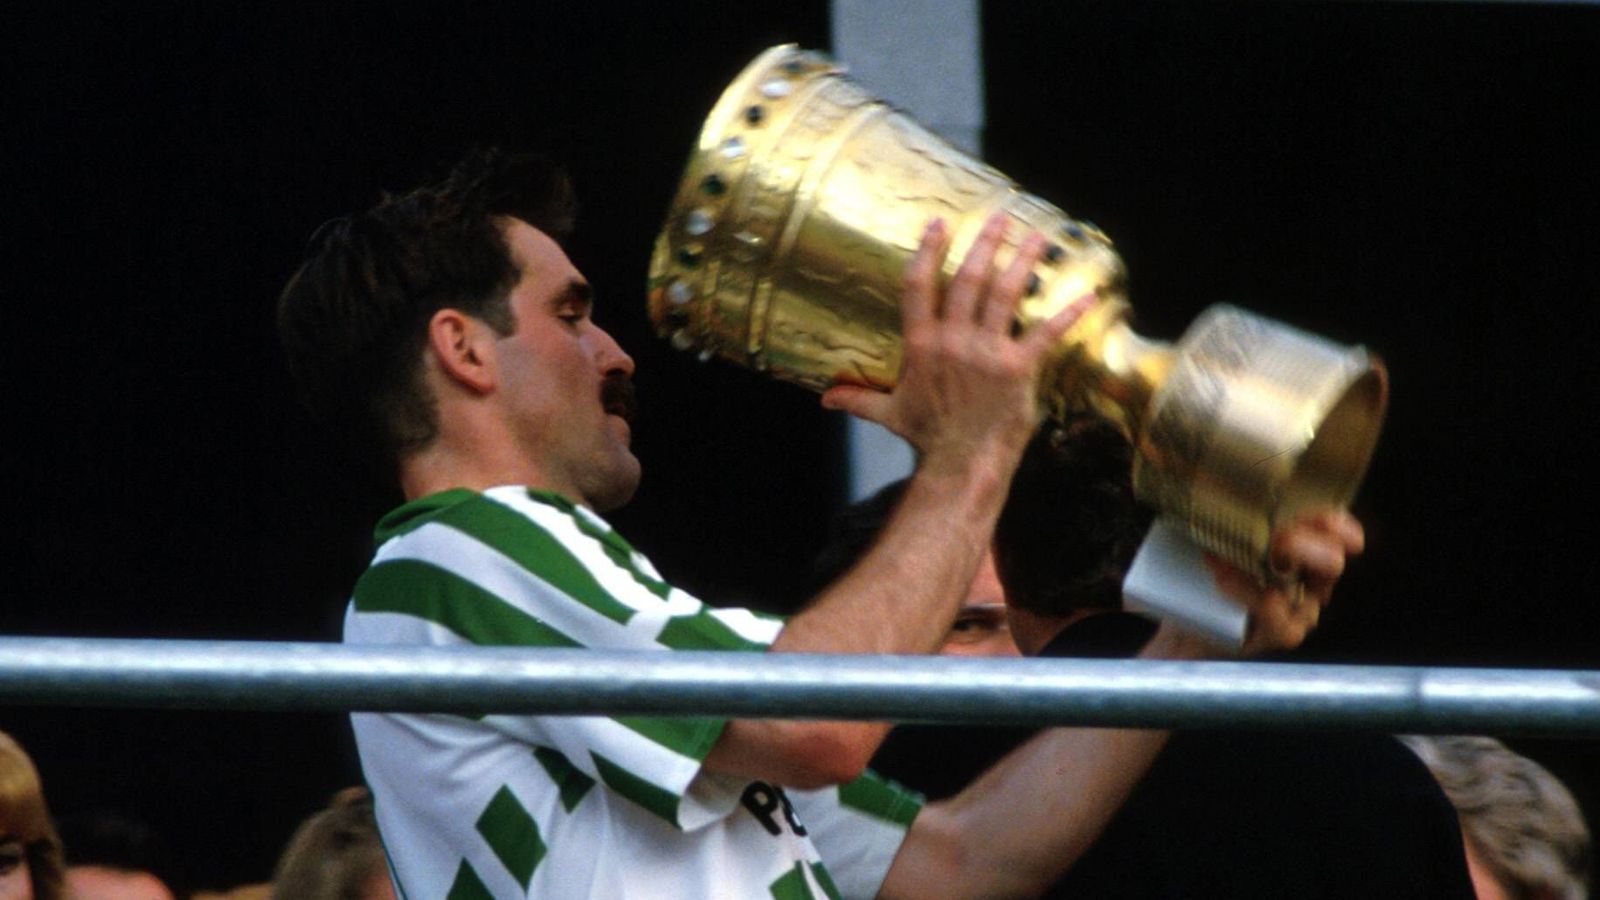 
                <strong>Die meisten Pokalspiele: Mirko Votava, 79</strong><br>
                Zwischen 1974 und 1996 bestritt Votava 79 Pokalspiele für Borussia Dortmund und Werder Bremen. Hinter ihm rangiert Karl-Heinz Körbel mit 70 Partien auf Platz zwei.
              